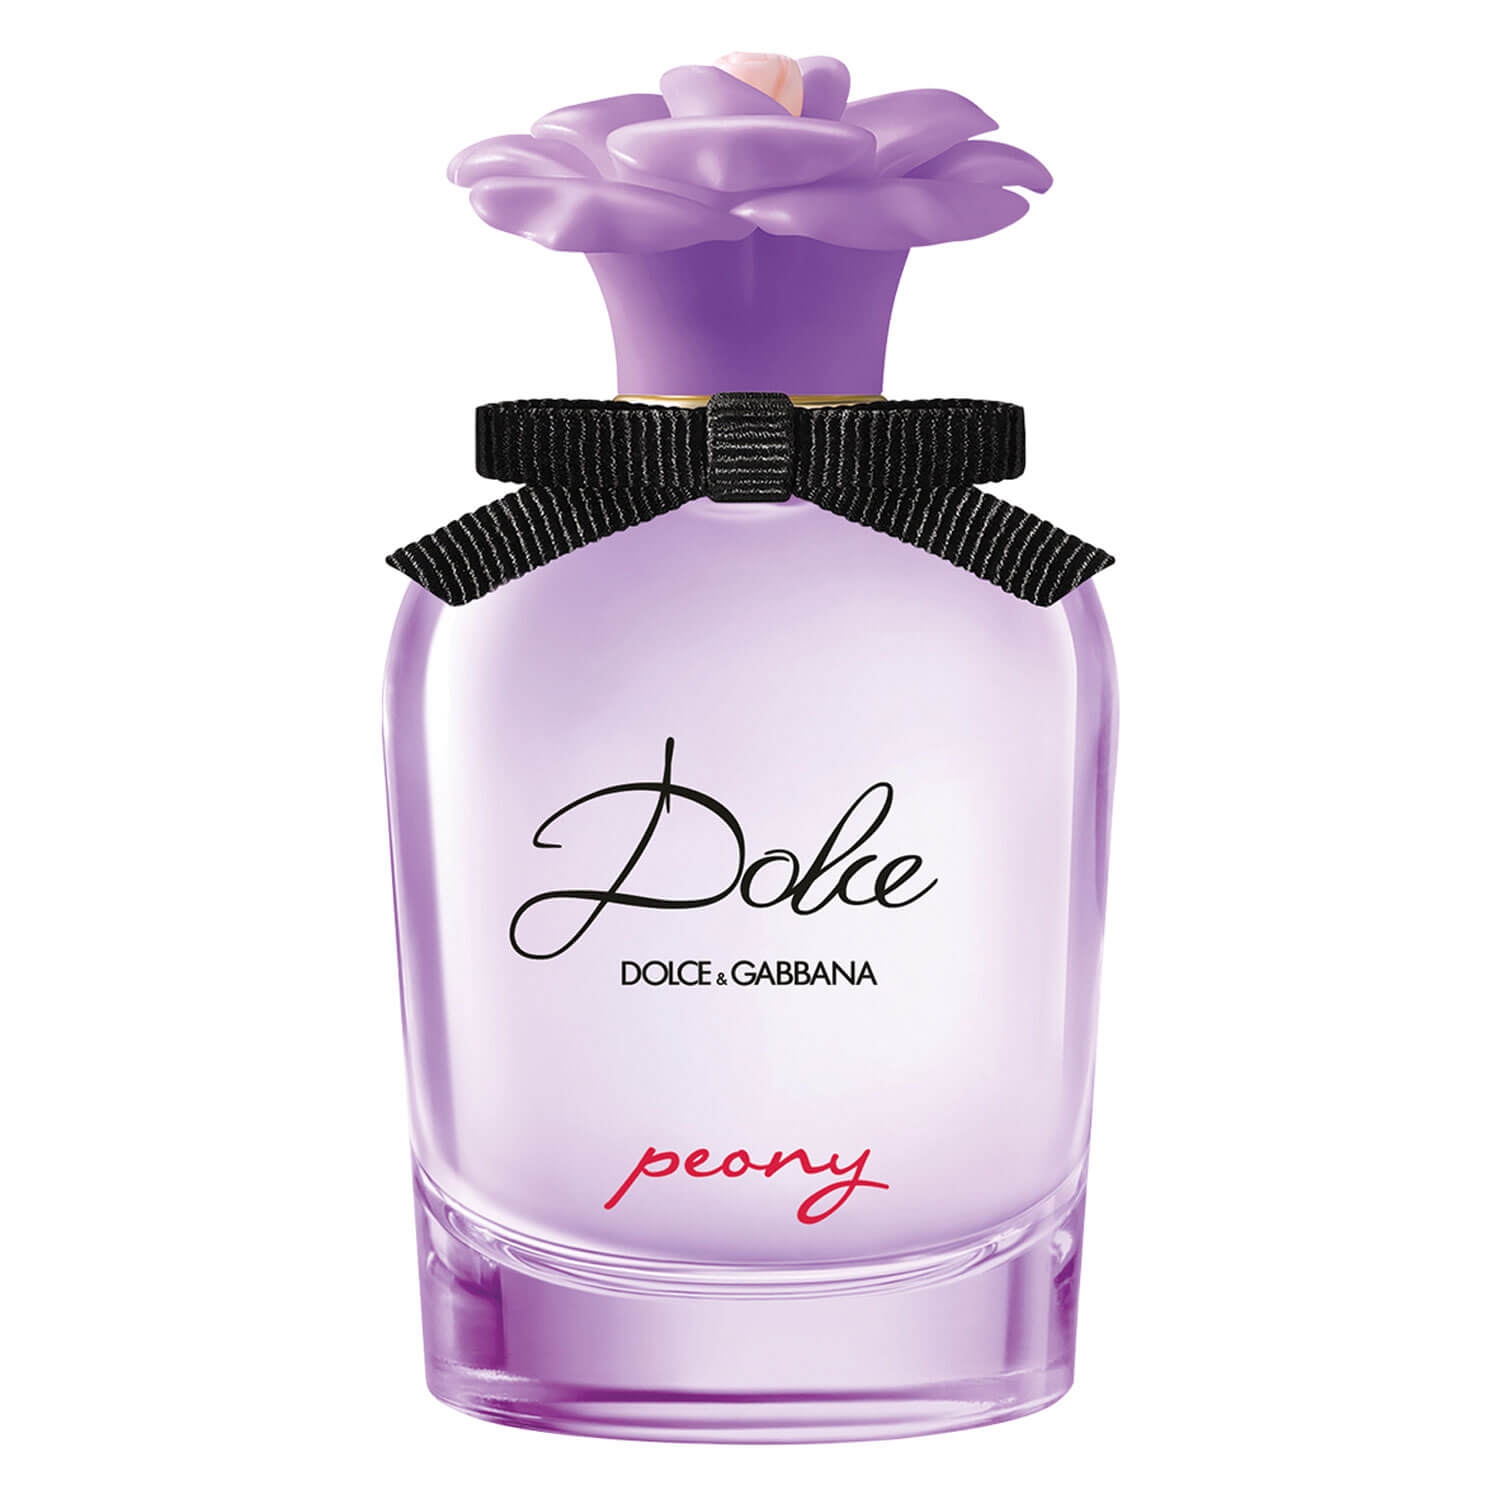 Produktbild von D&G Dolce - Peony Eau de Parfum